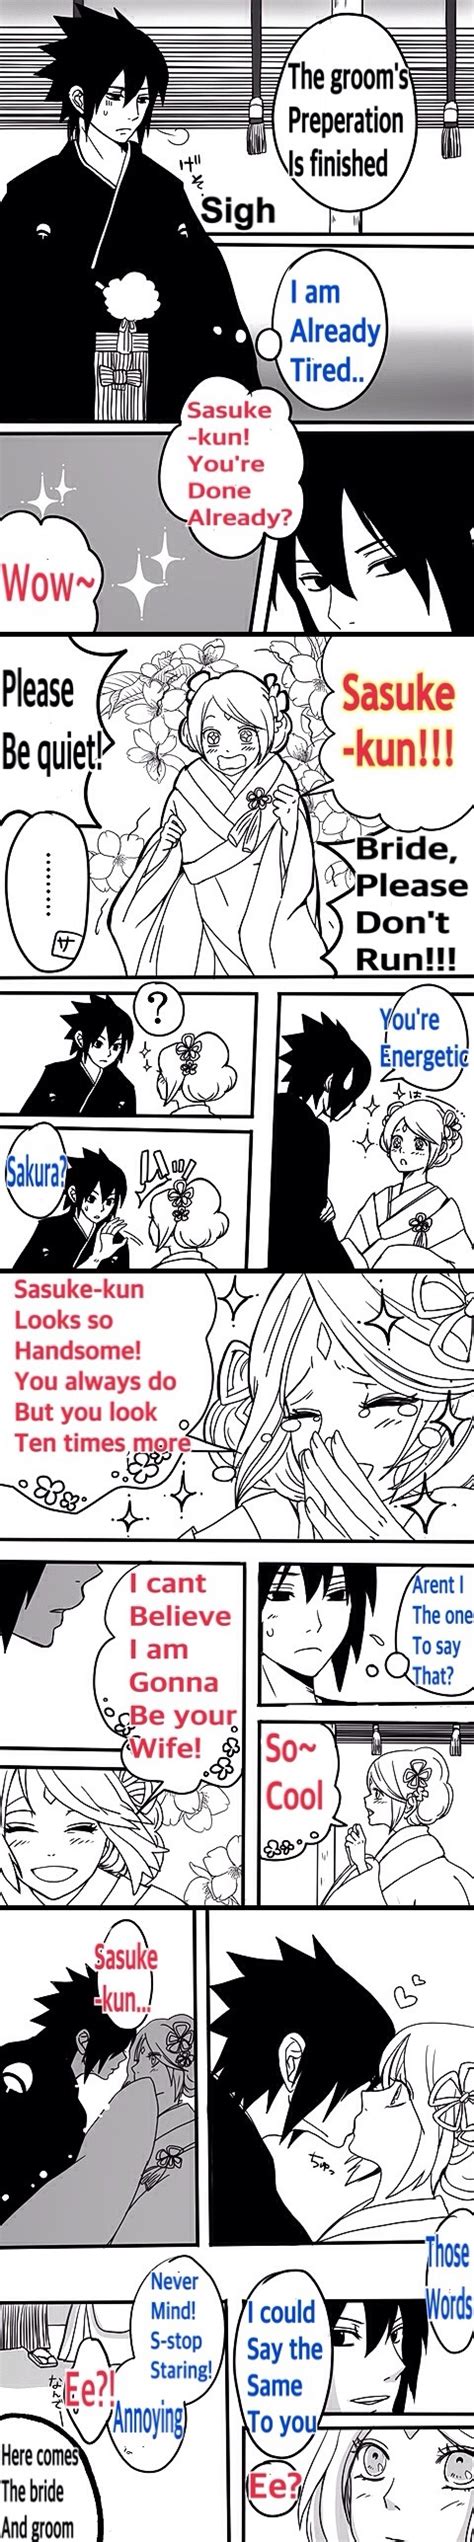 sasuke and sakura on their wedding day anime